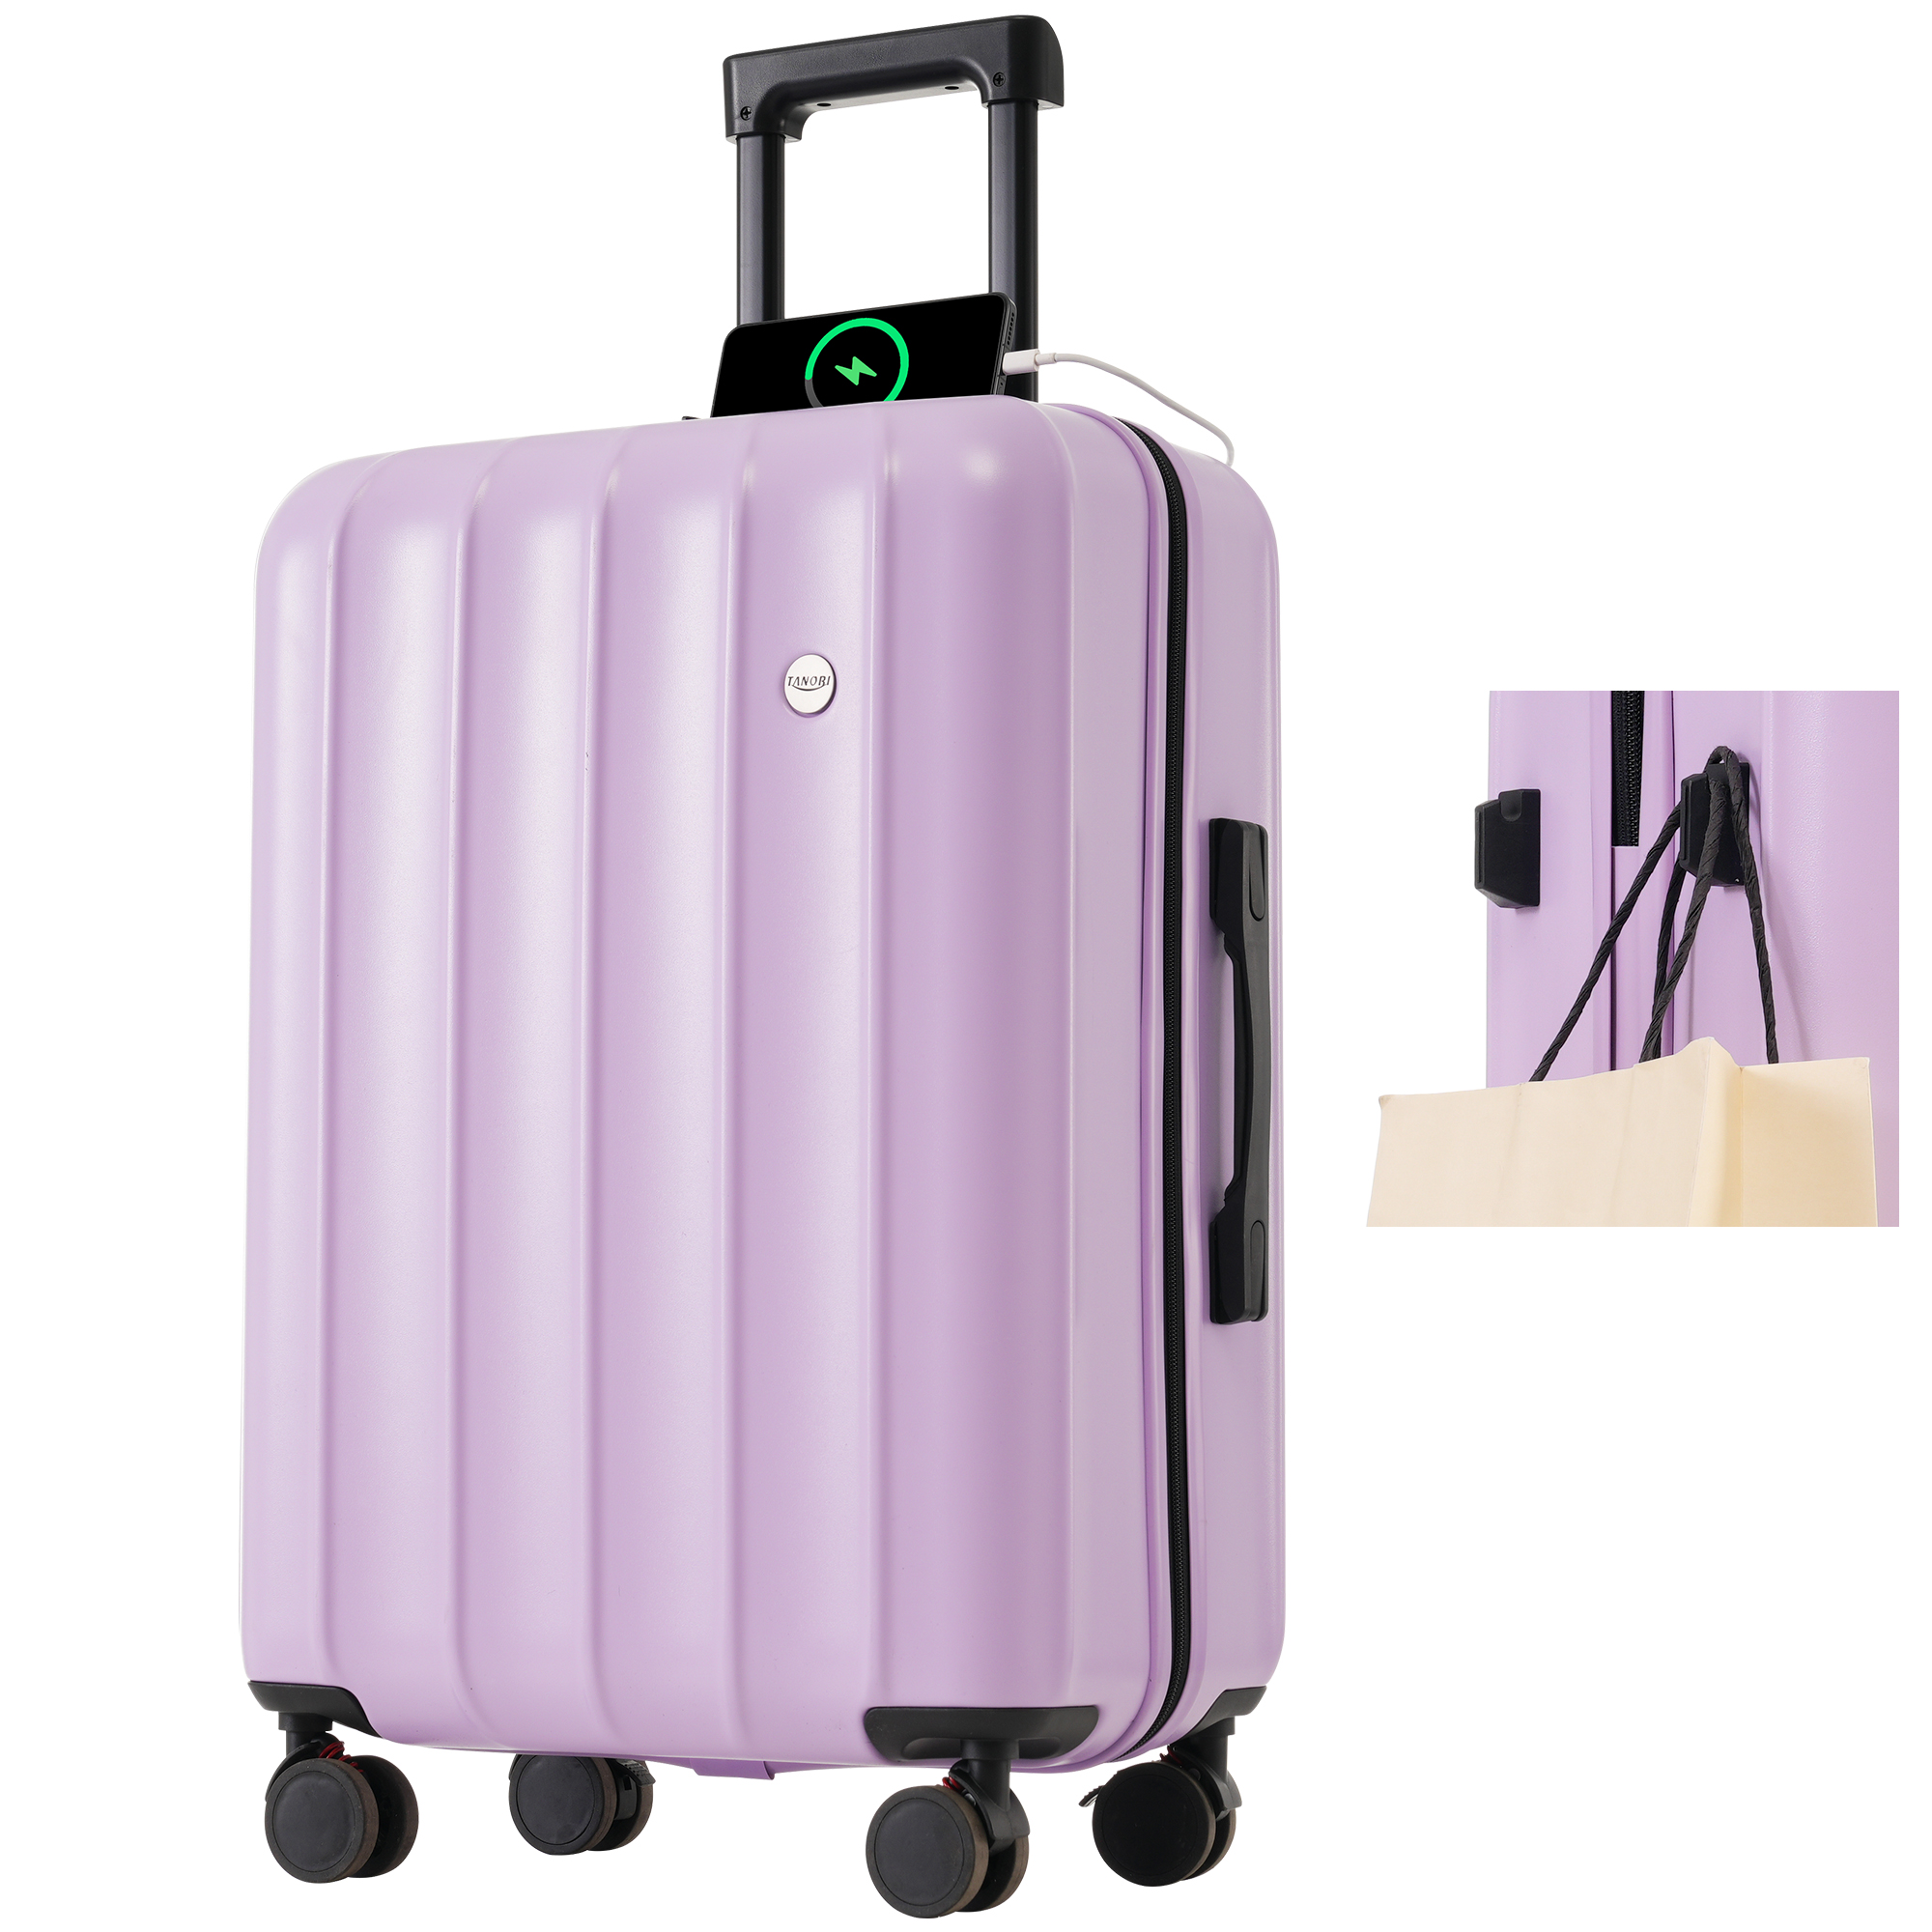 スーツケース Lサイズ キャリーケース 8-14日宿泊 キャリーバッグ USBポート フック付き 超軽量 ストッパー付き TSAローク搭載 旅行